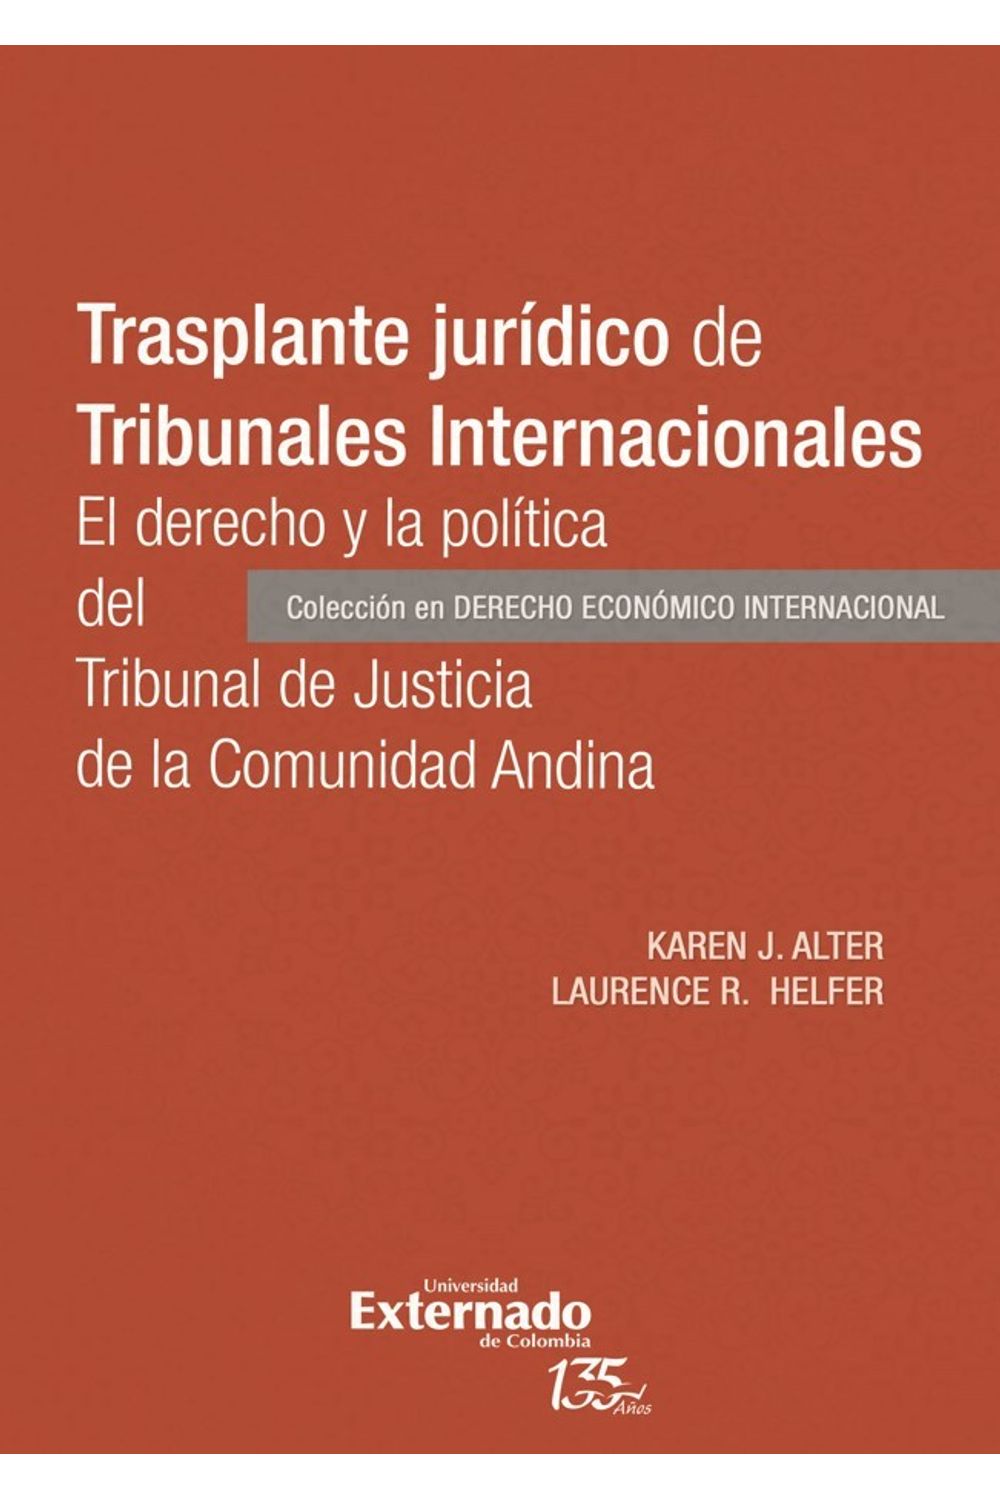 trasplante-juridico-de-tribunales-internacionales-9789587905540-uext